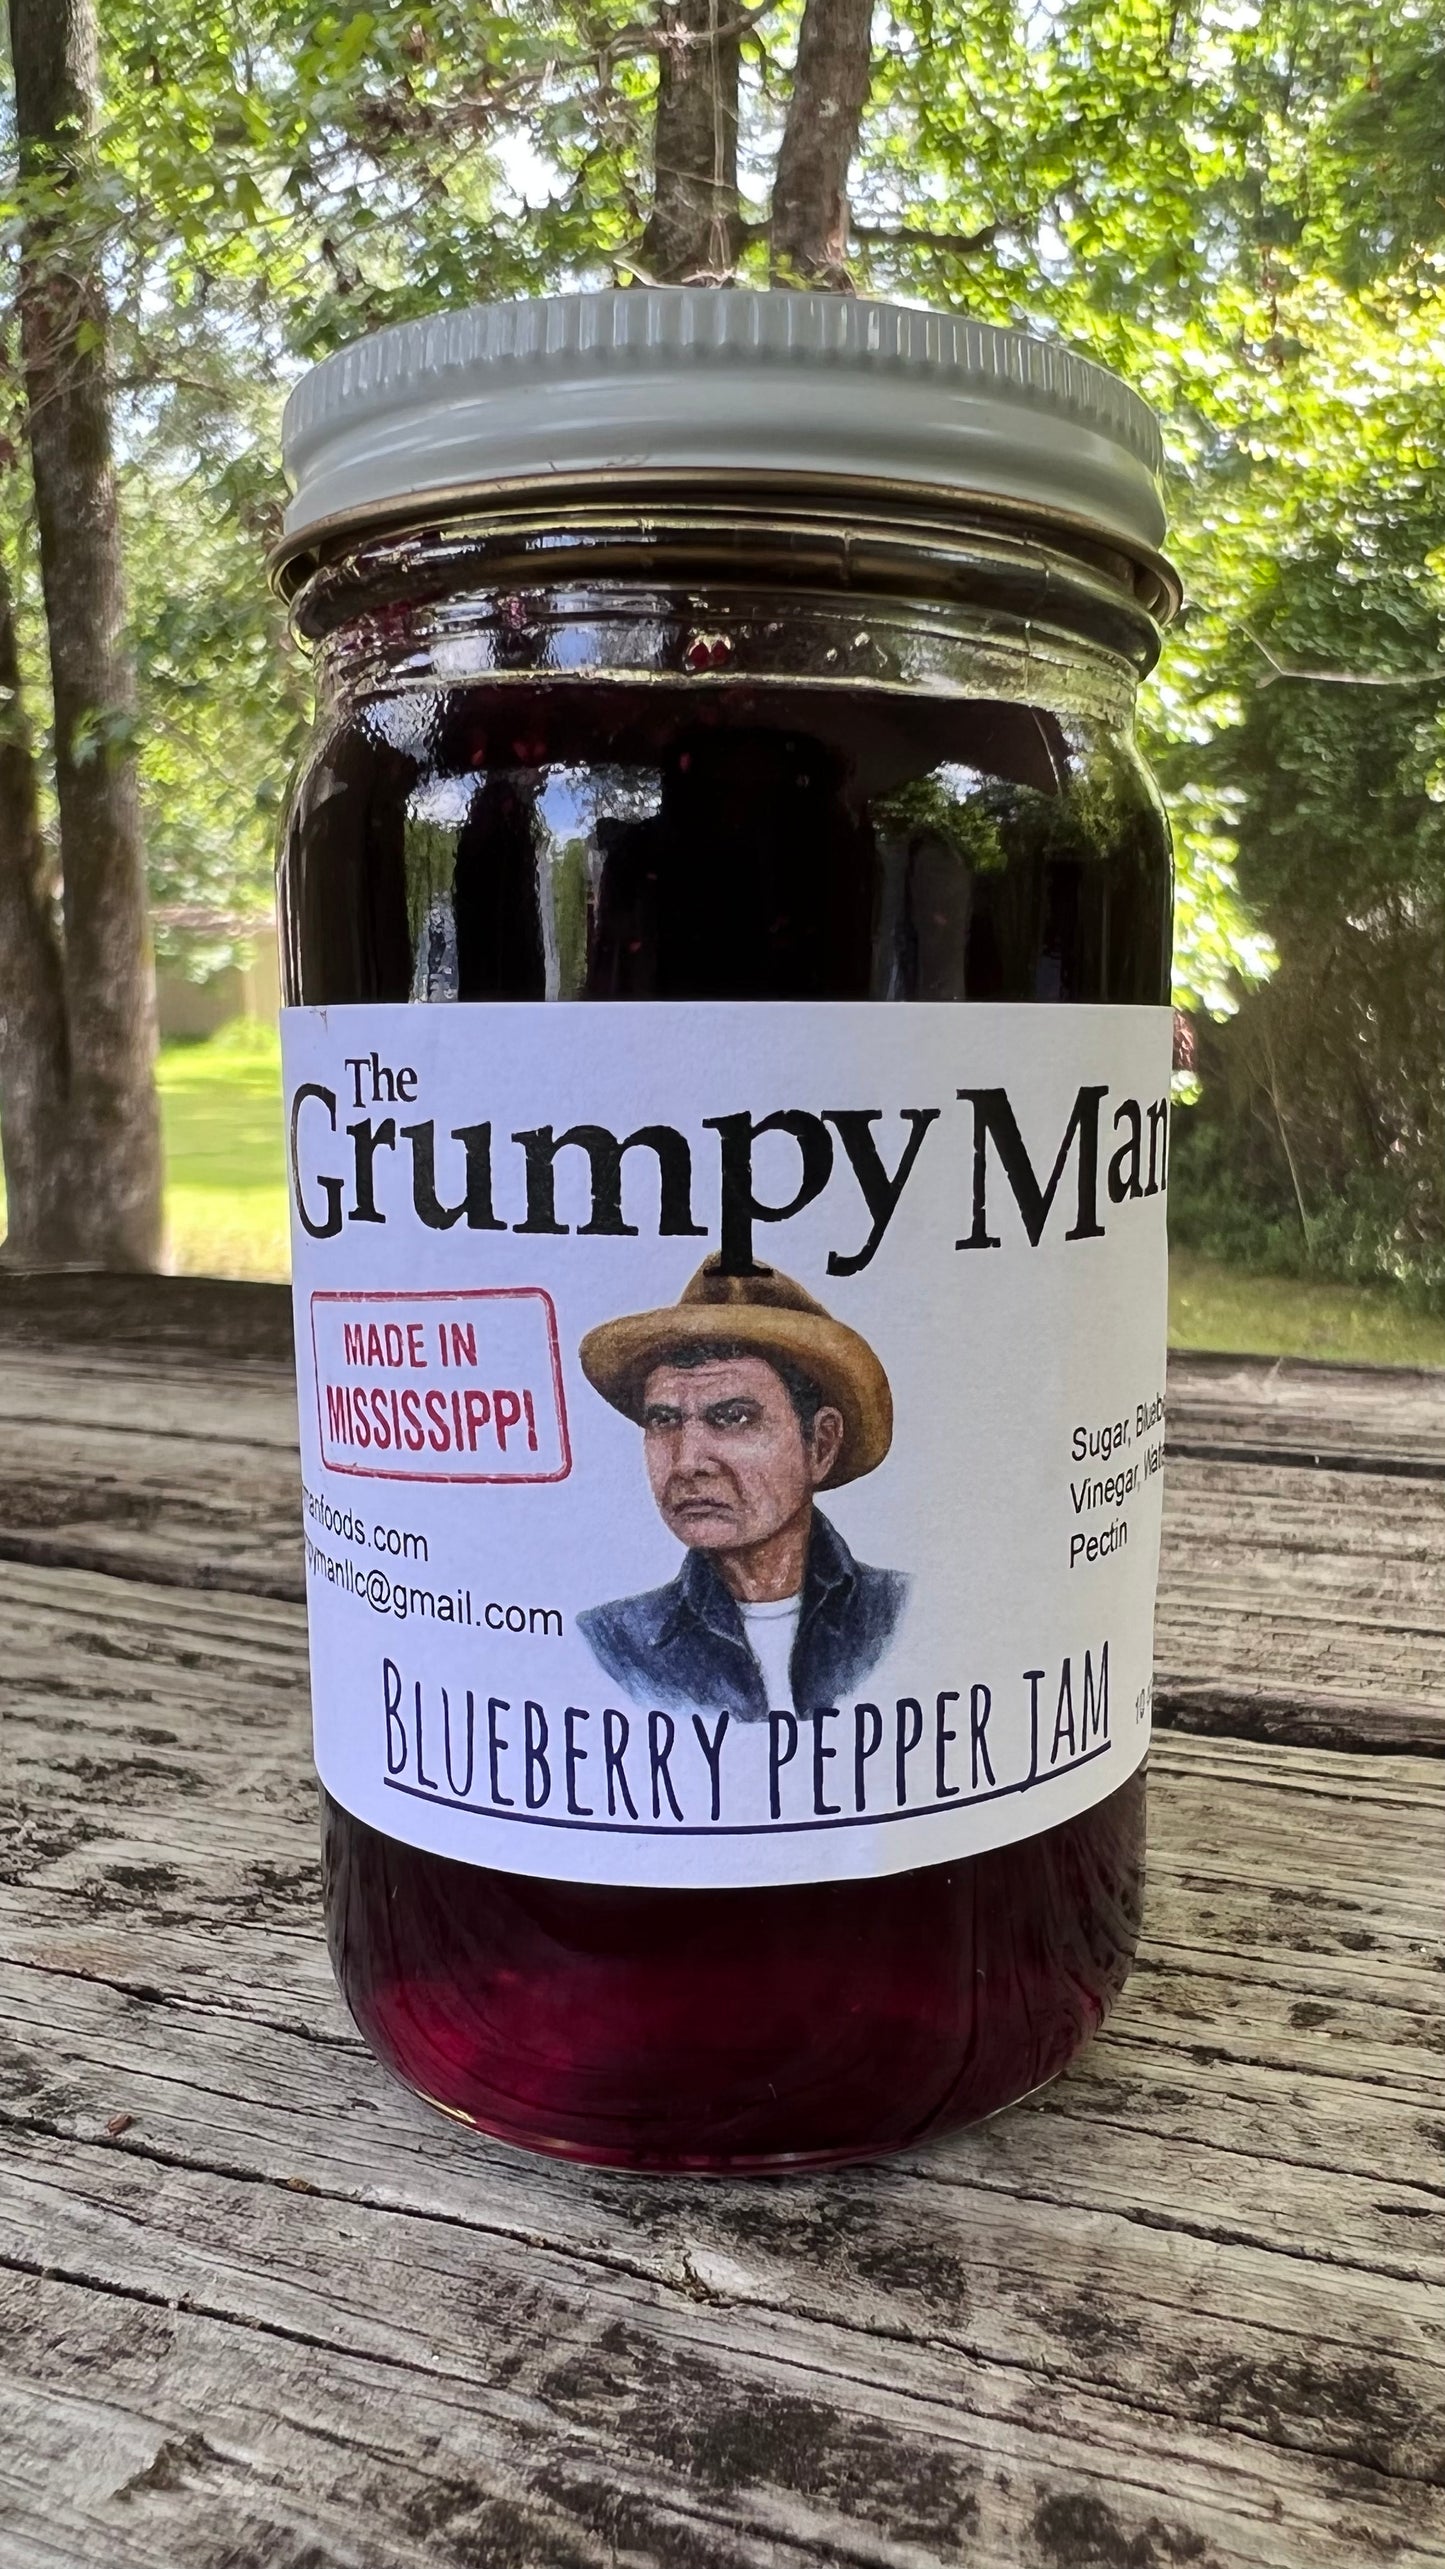 Blueberry Pepper Jam